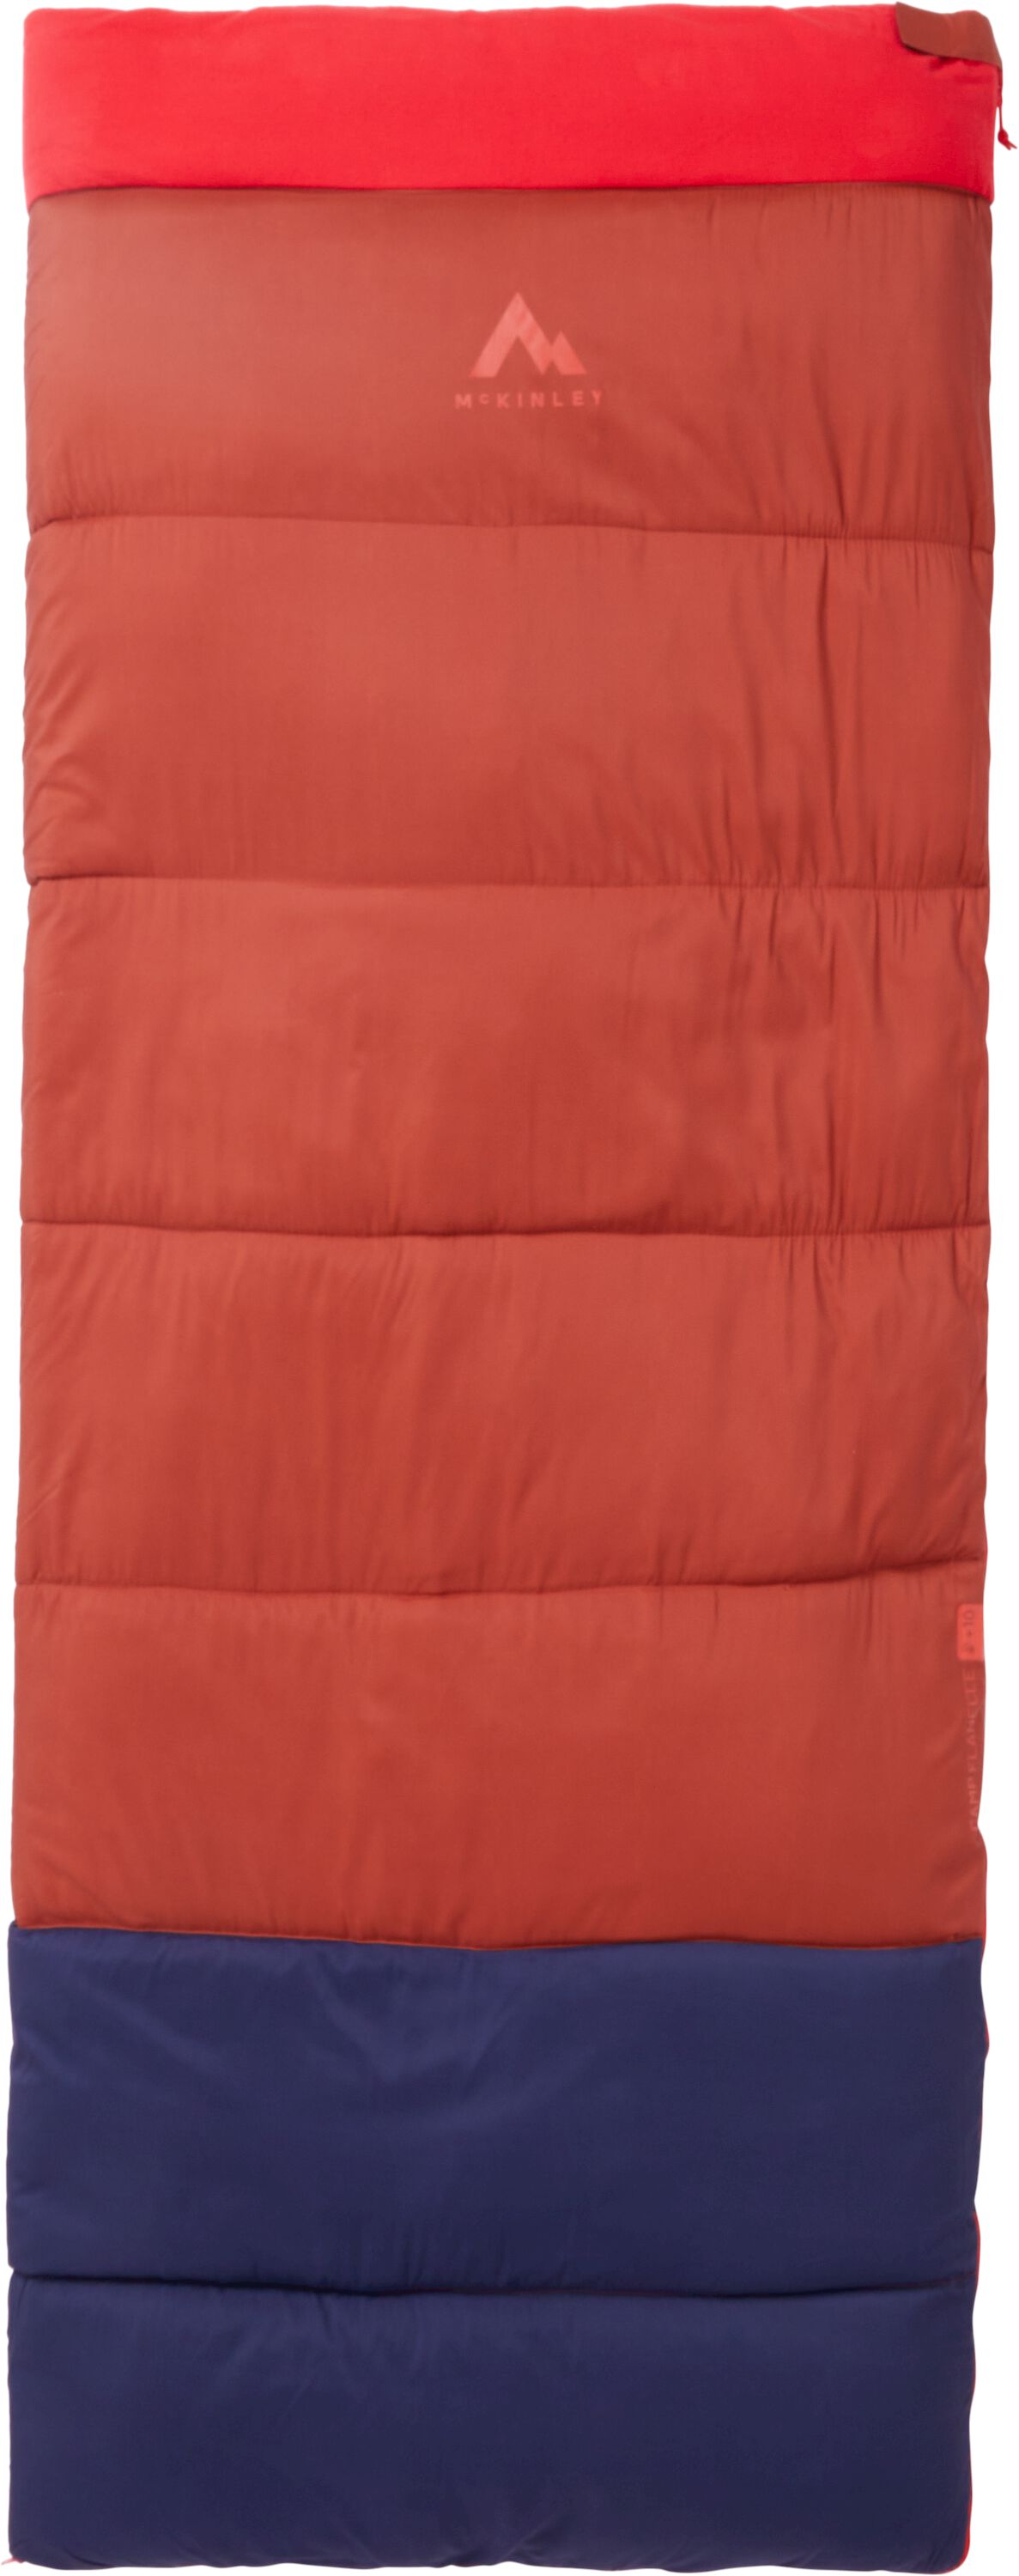 McKinley Camp Flanelle II Blanket Sleeping Bag Velikost: Levý